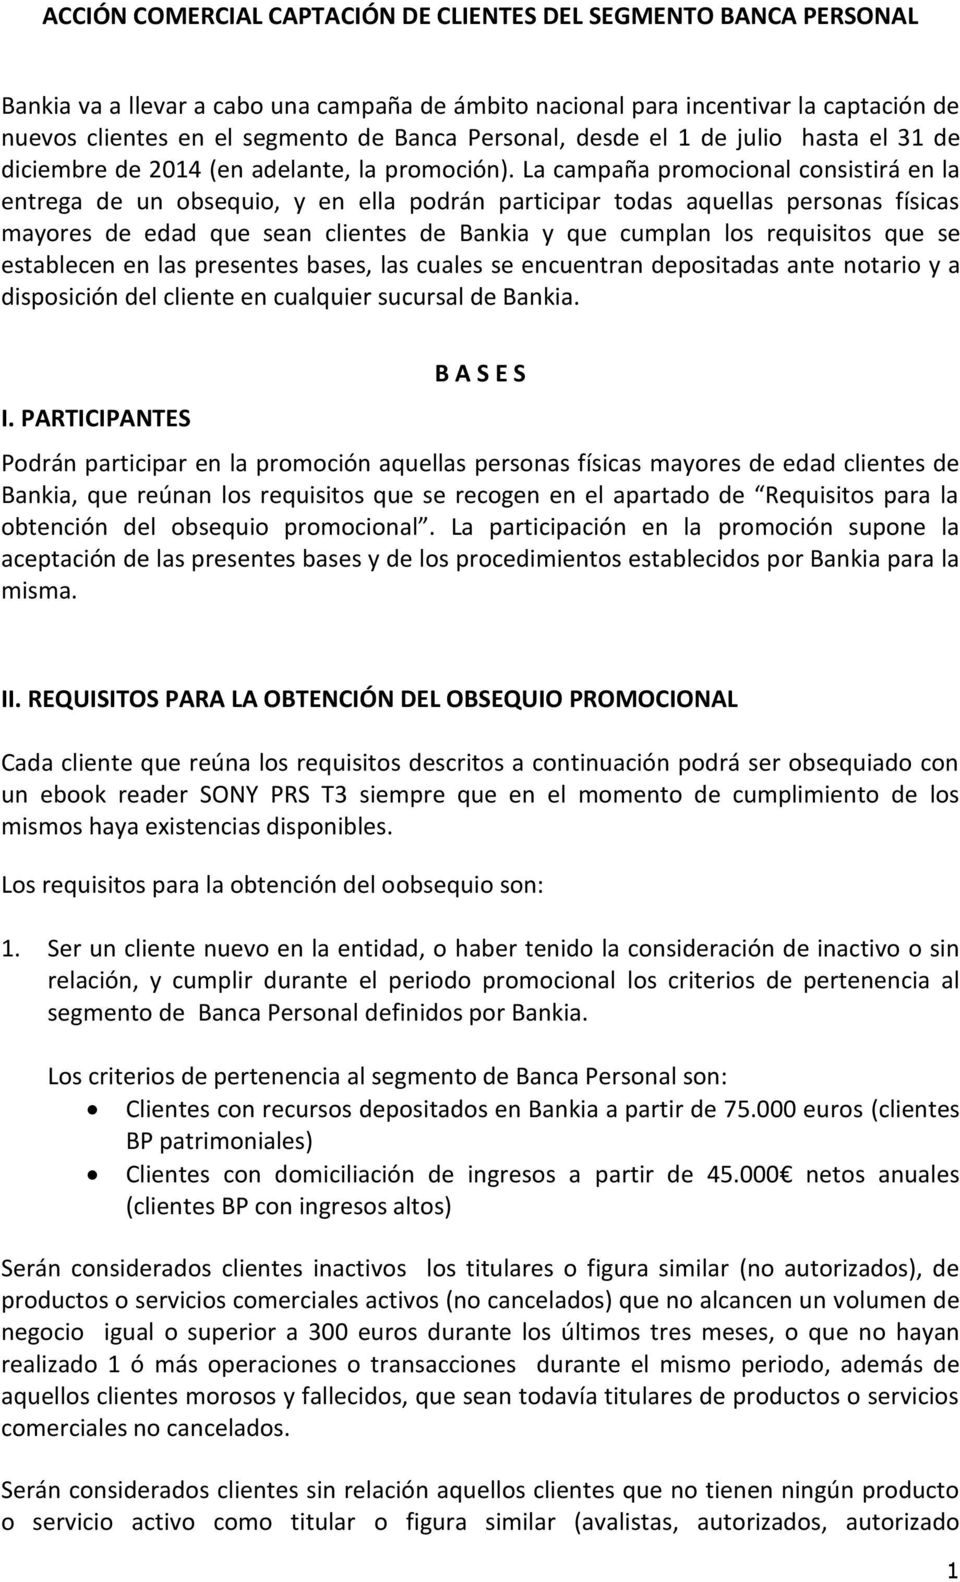 La campaña promocional consistirá en la entrega de un obsequio, y en ella podrán participar todas aquellas personas físicas mayores de edad que sean clientes de Bankia y que cumplan los requisitos